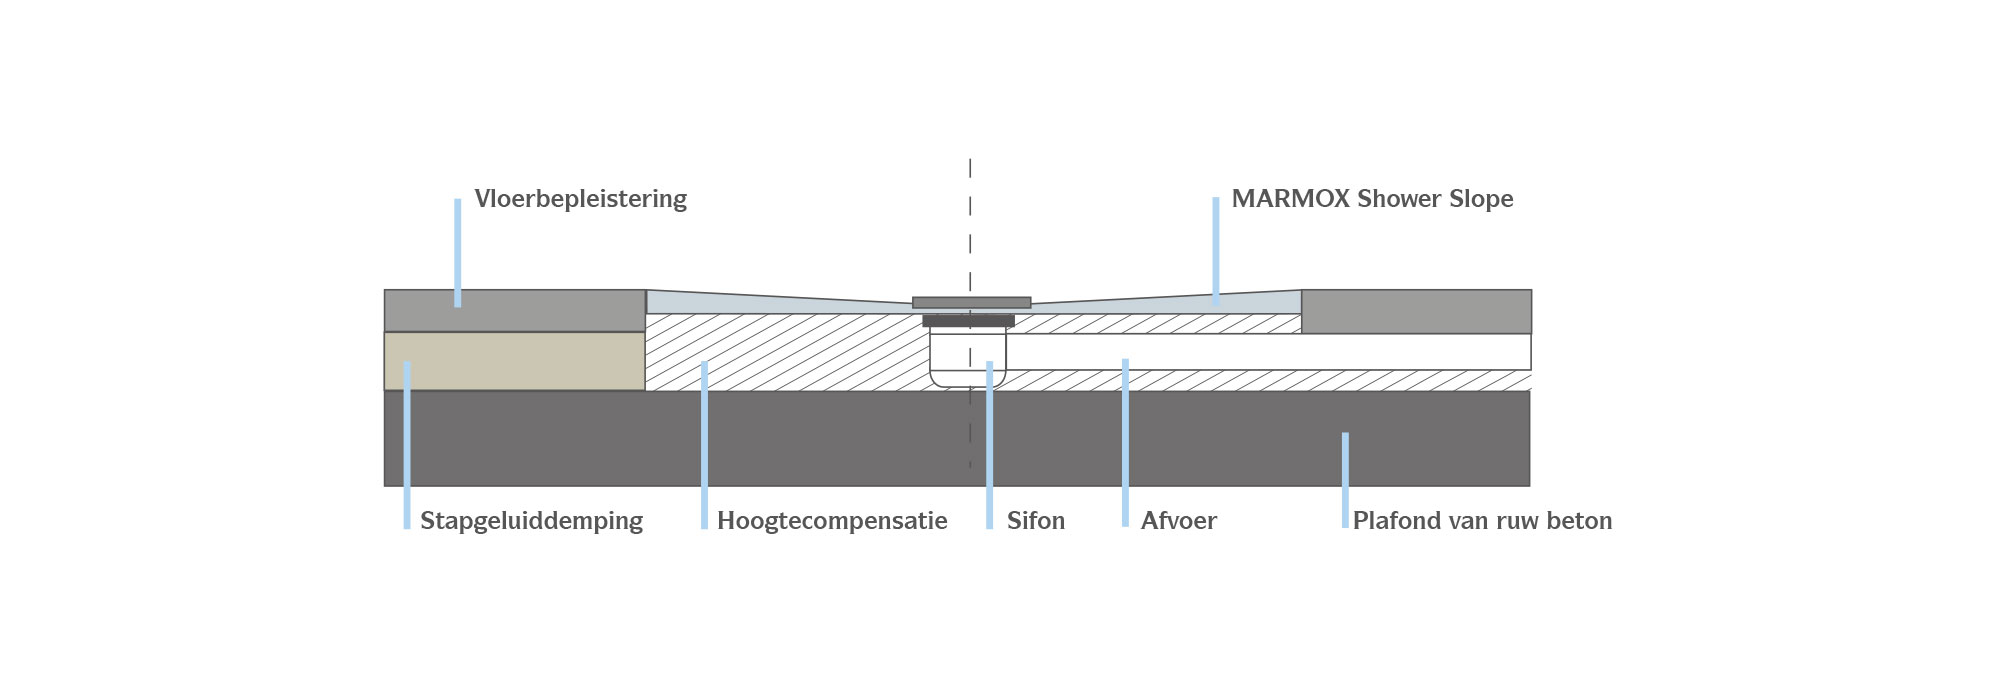 MARMOX Shower Slope - Montage auf Betonböden Details